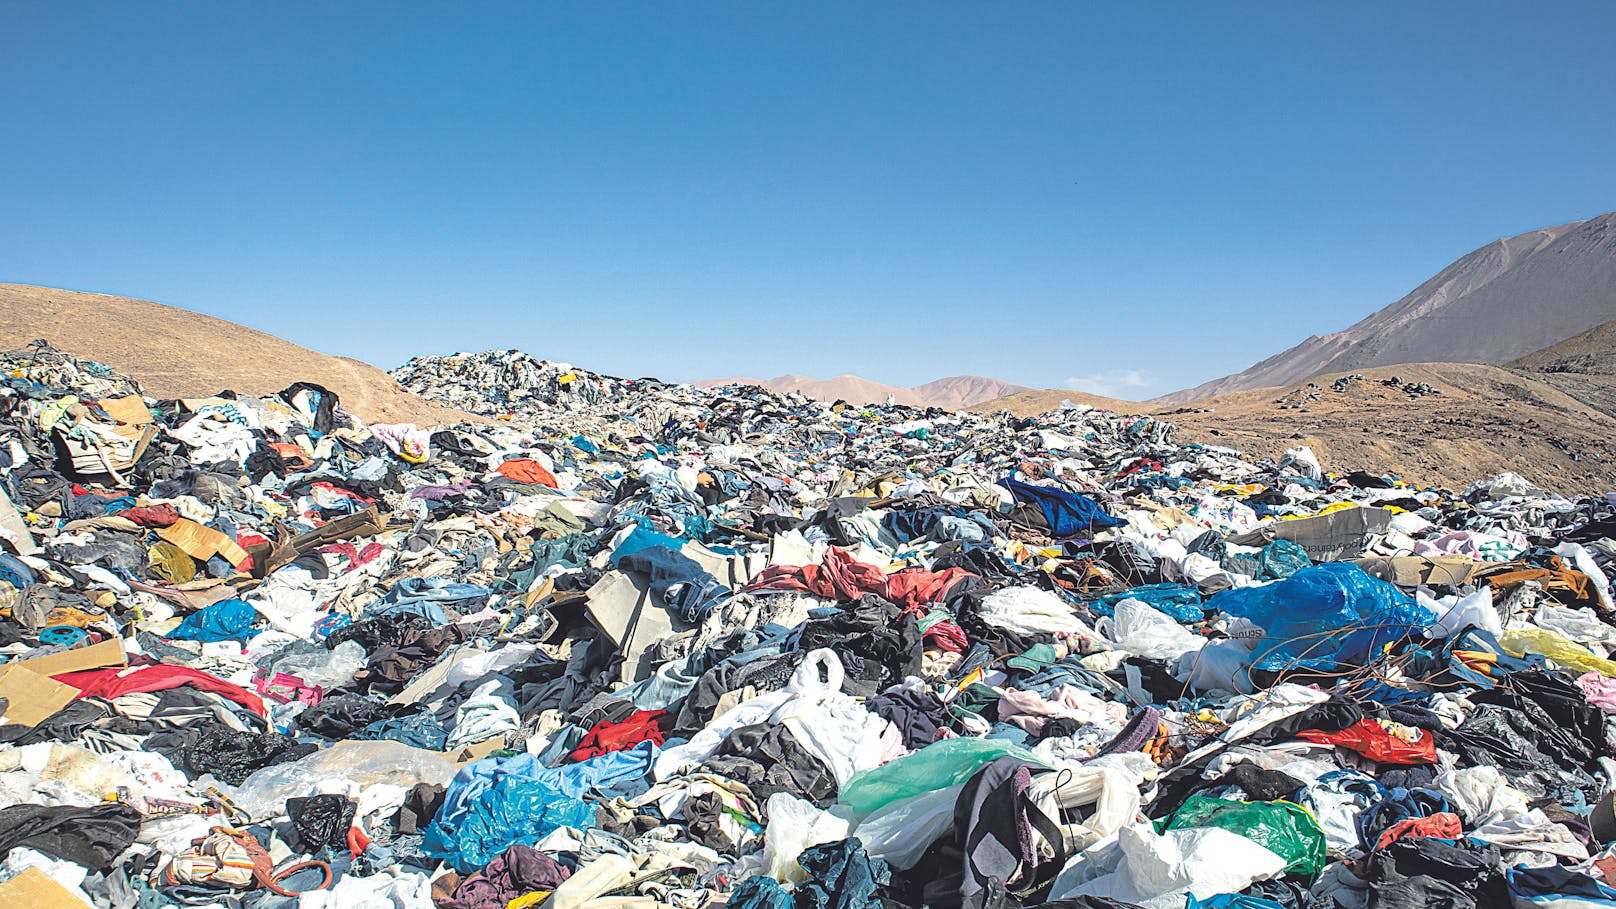 Tonnen an illegal entsorgter Altkleider landen täglich in der Atacama-Wüste in Chile.&nbsp;In der nahe gelegenen Freihandelszone von Iquique kamen im Jahr 2021 bis Oktober 29.178 Tonnen gebrauchte Kleidung an. 40 Prozent davon wurden illegal in der Wüste entsorgt.<br>